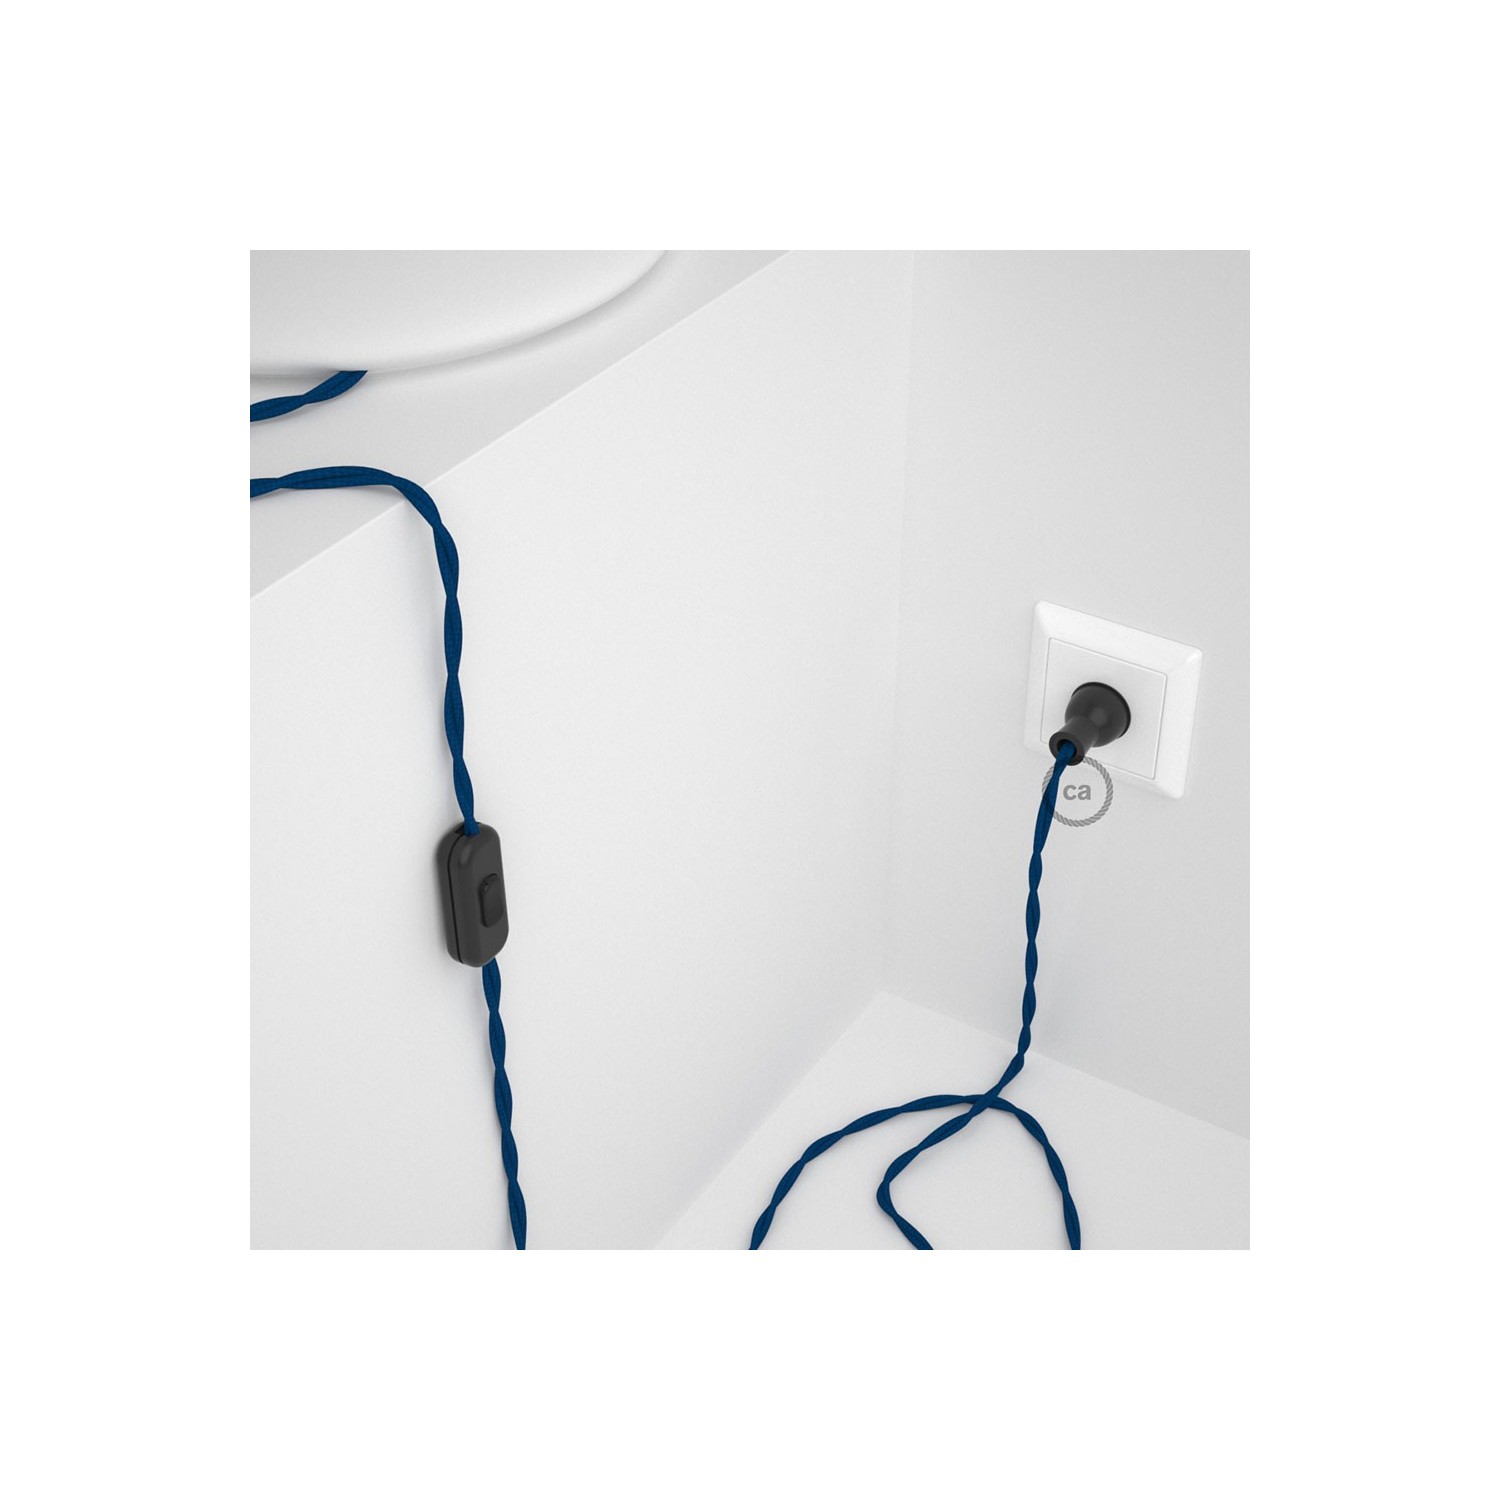 Cableado para lámpara de mesa, cable TM12 Rayón Azul 1,8 m. Elige el color de la clavija y del interruptor!